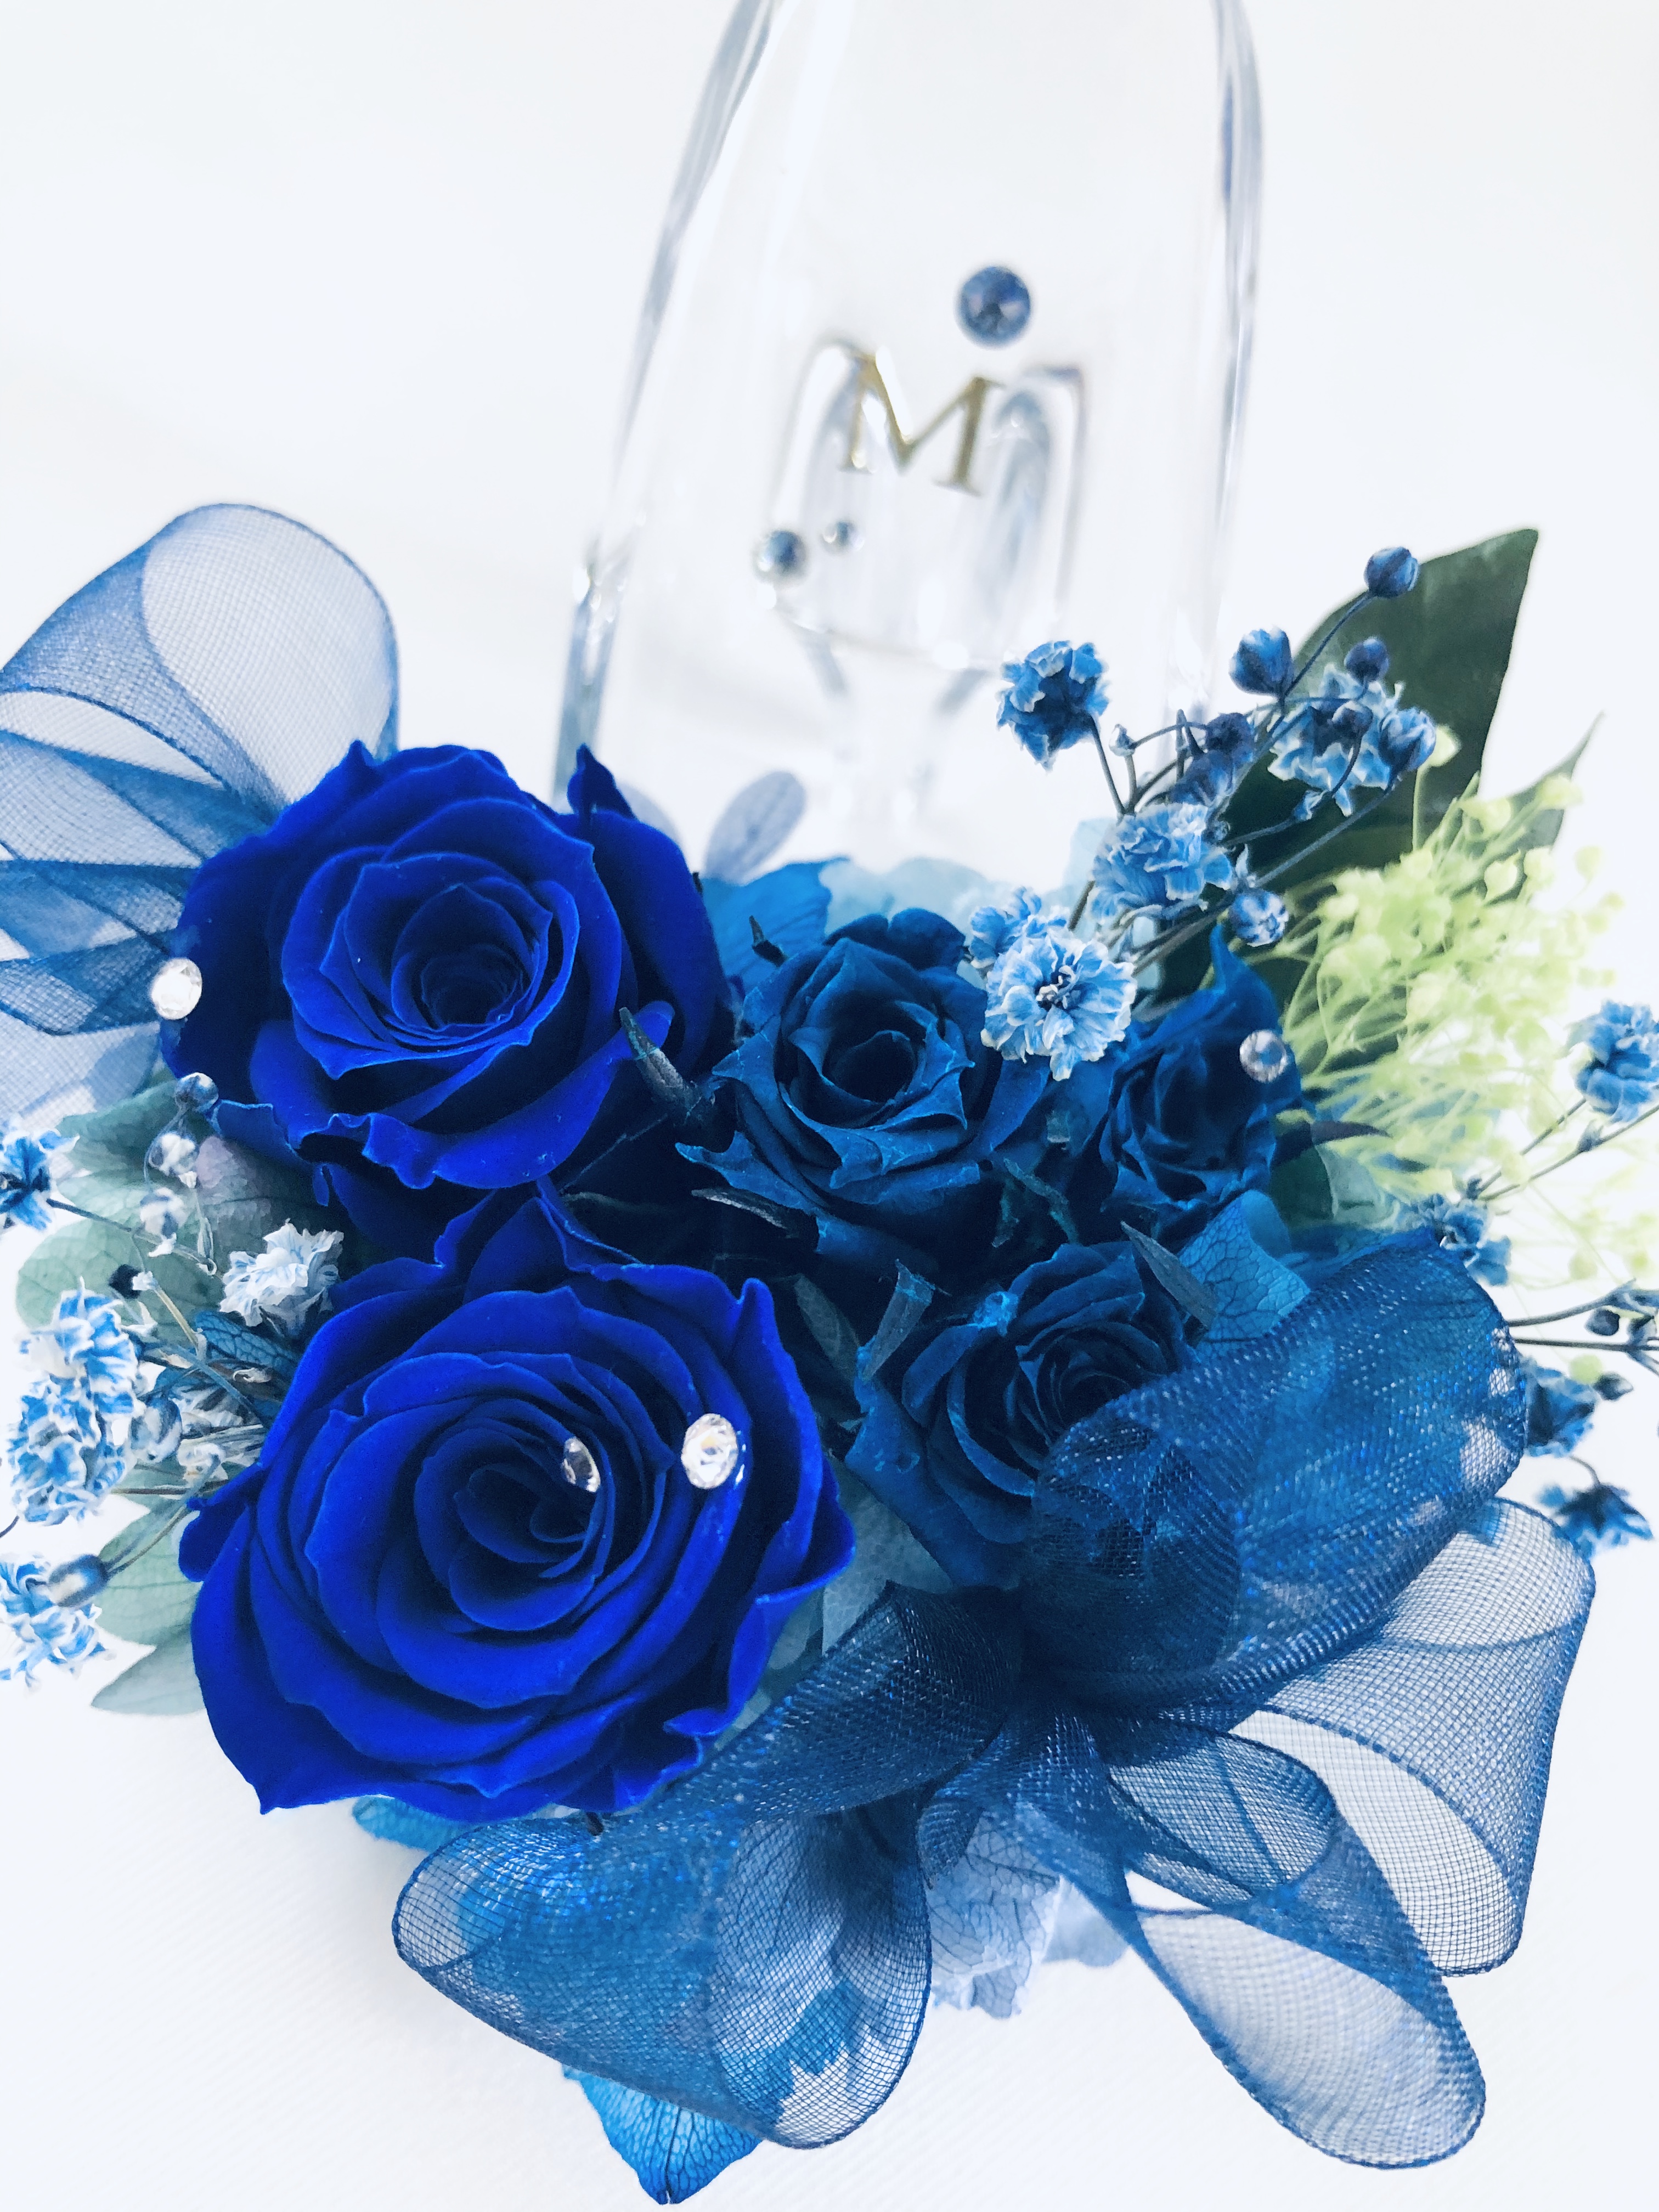 プリザーブドフラワー ガラスの靴ミニシリーズ 青い薔薇のミニサイズのガラスの靴 リボンラッピング付き Iichi ハンドメイド クラフト作品 手仕事品の通販